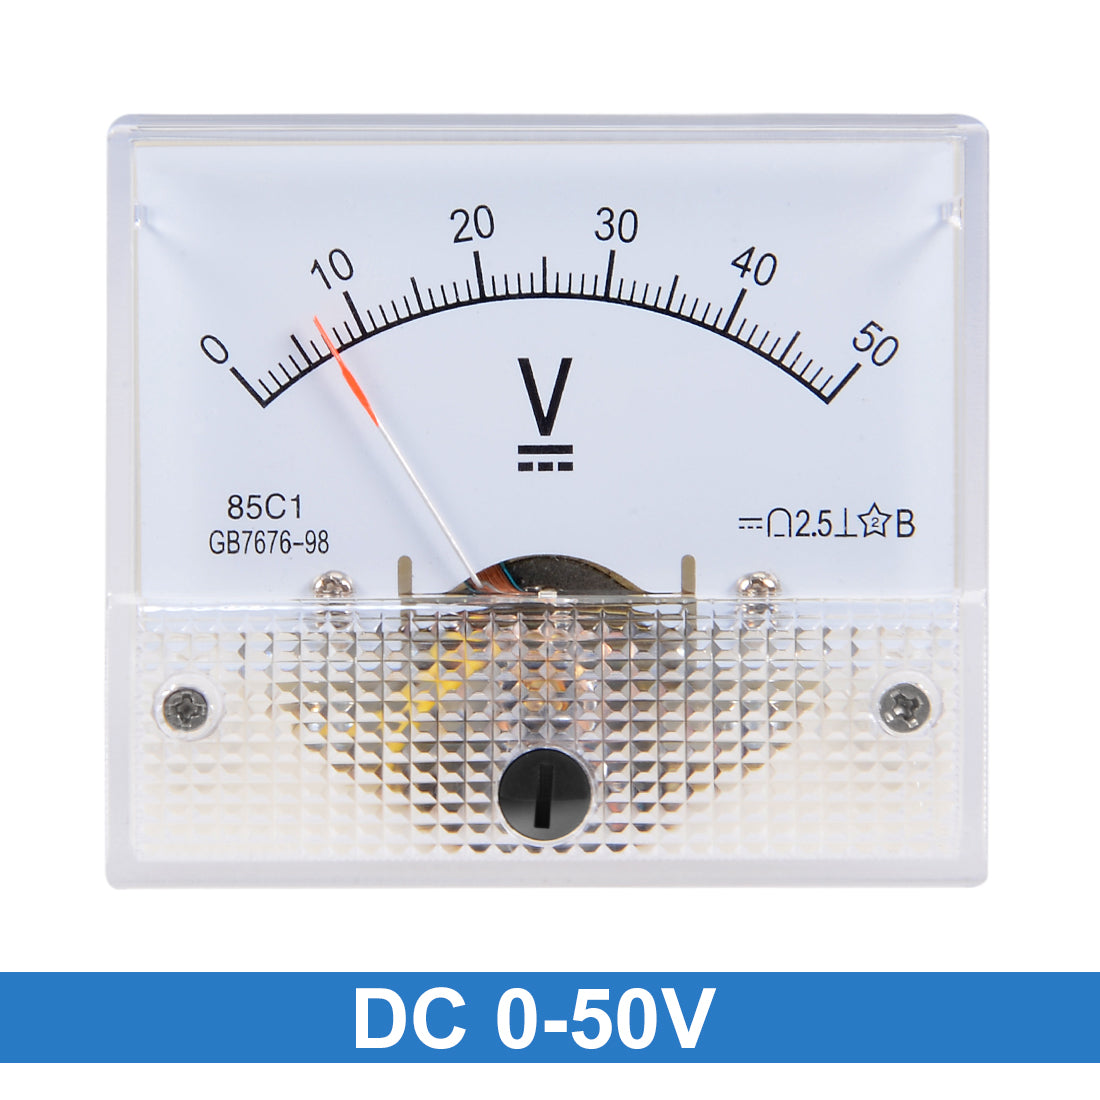 uxcell Uxcell DC 0-50V Analog Panel Voltage Gauge Volt Meter 85C1 2.5% Error